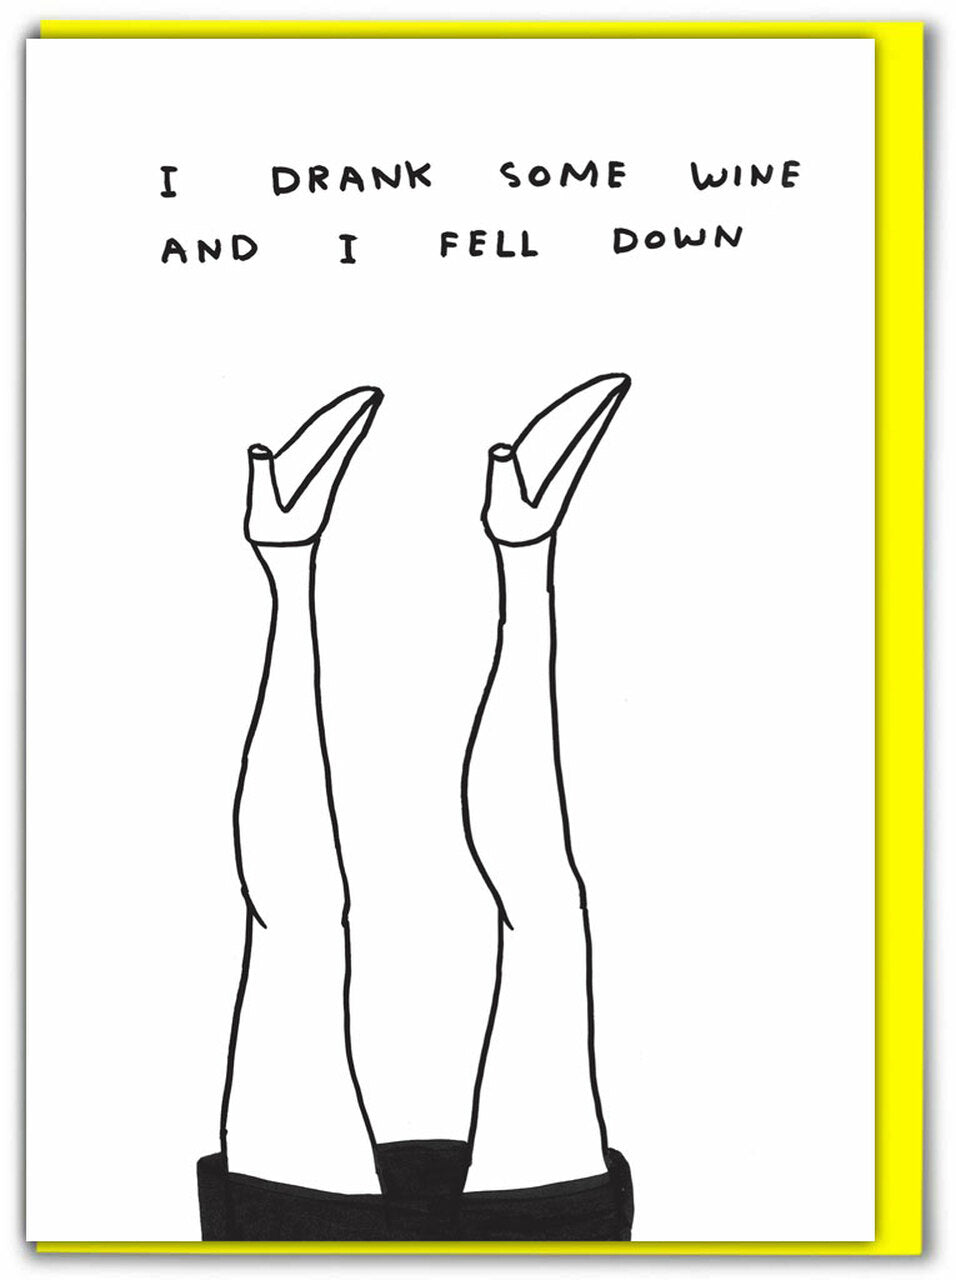 I DRANK SOME WINE Card by David Shrigley